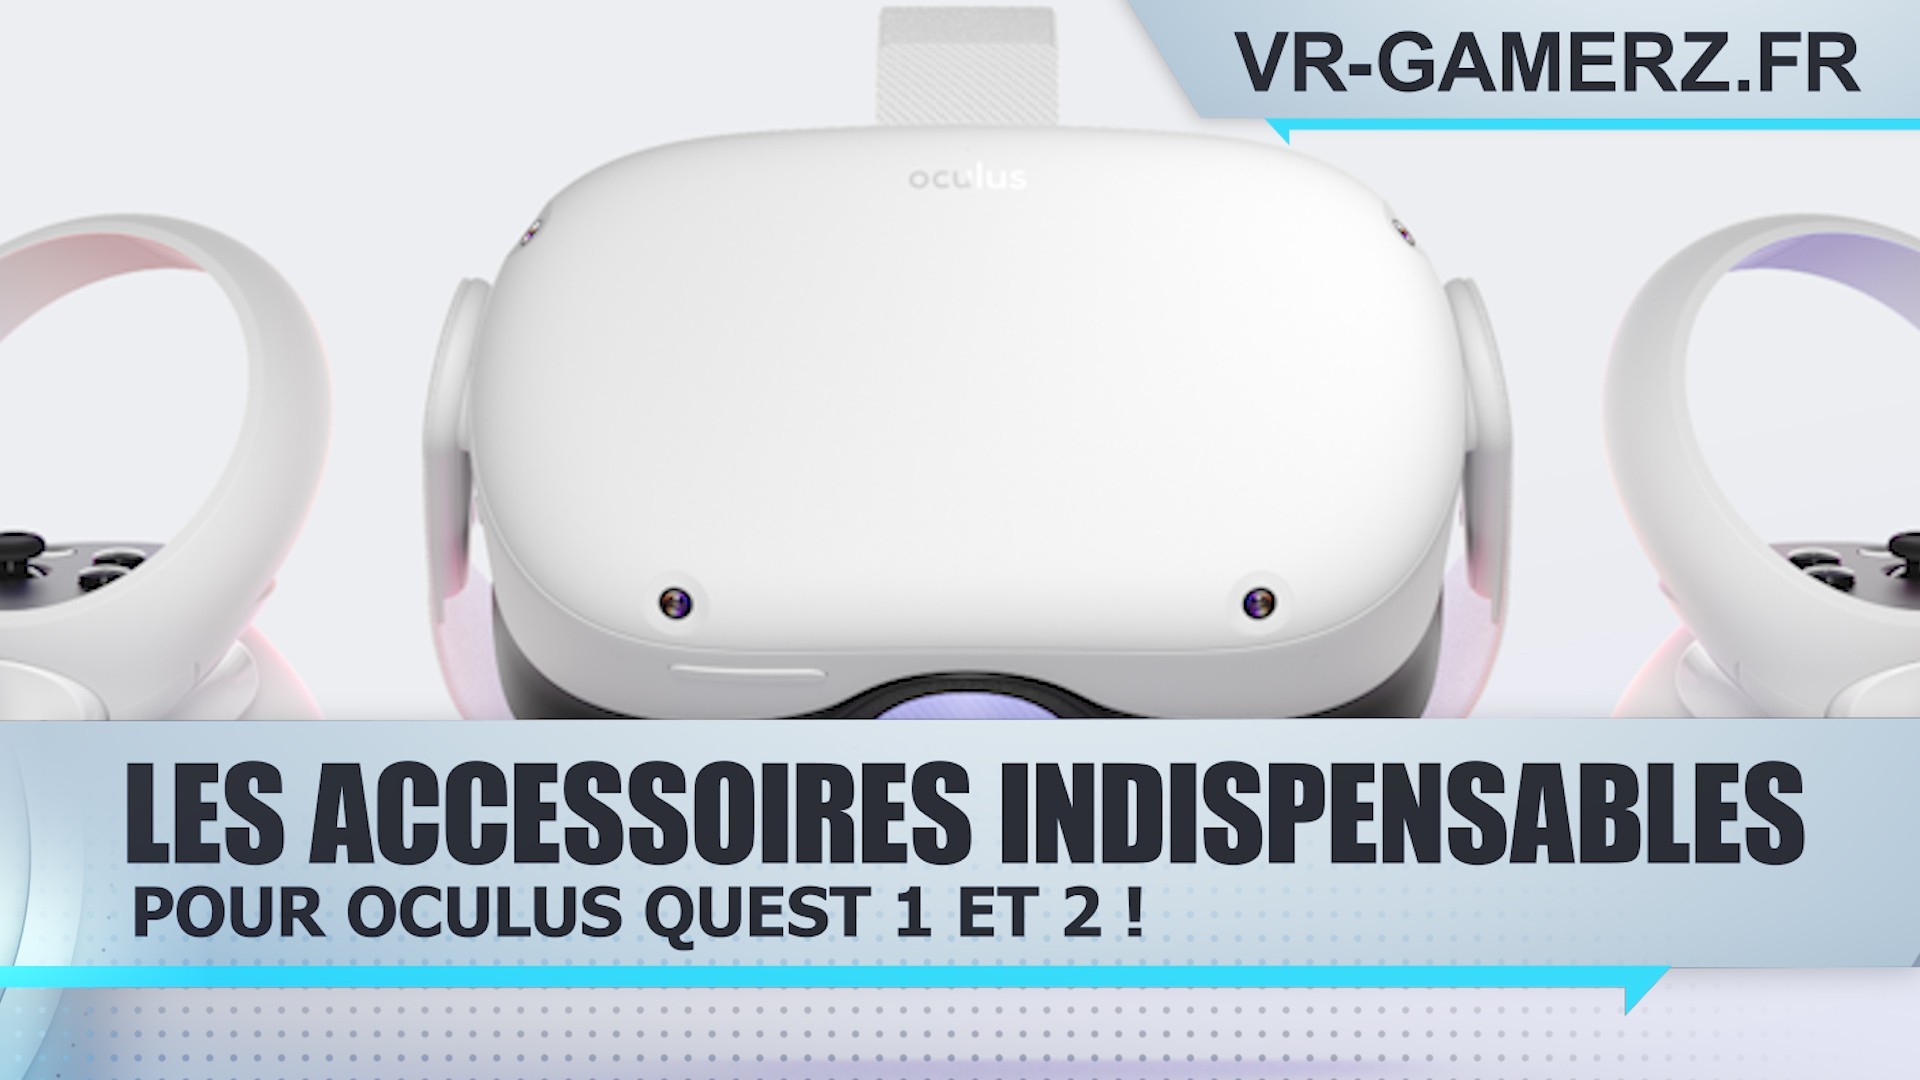 Les accessoires indispensables pour Oculus quest 1 et 2 :